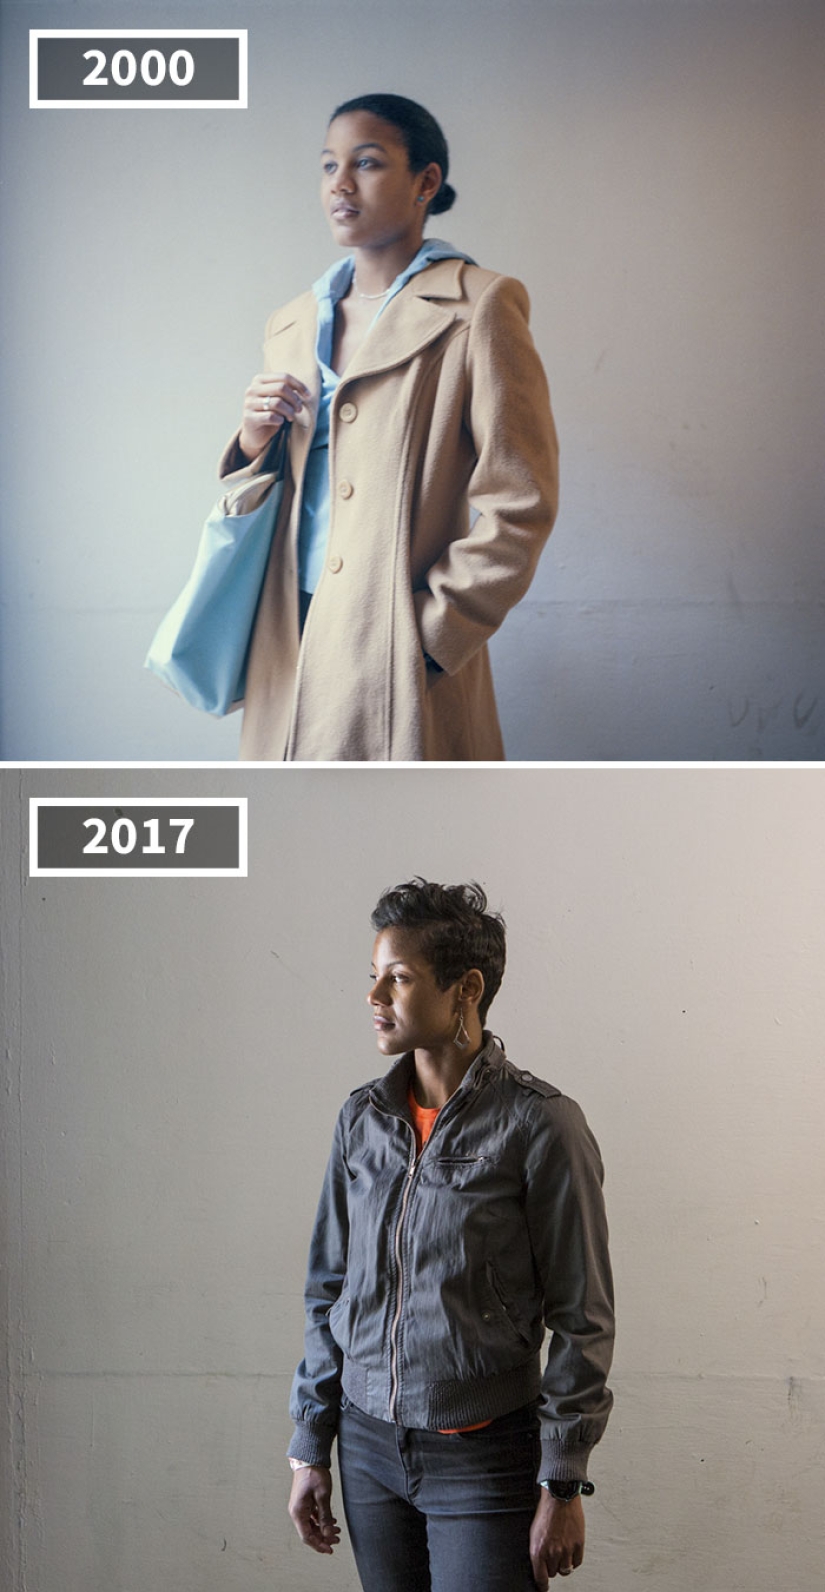 17 años después: el fotógrafo utiliza el ejemplo de los amigos para mostrar cómo las personas crecen de diferentes maneras